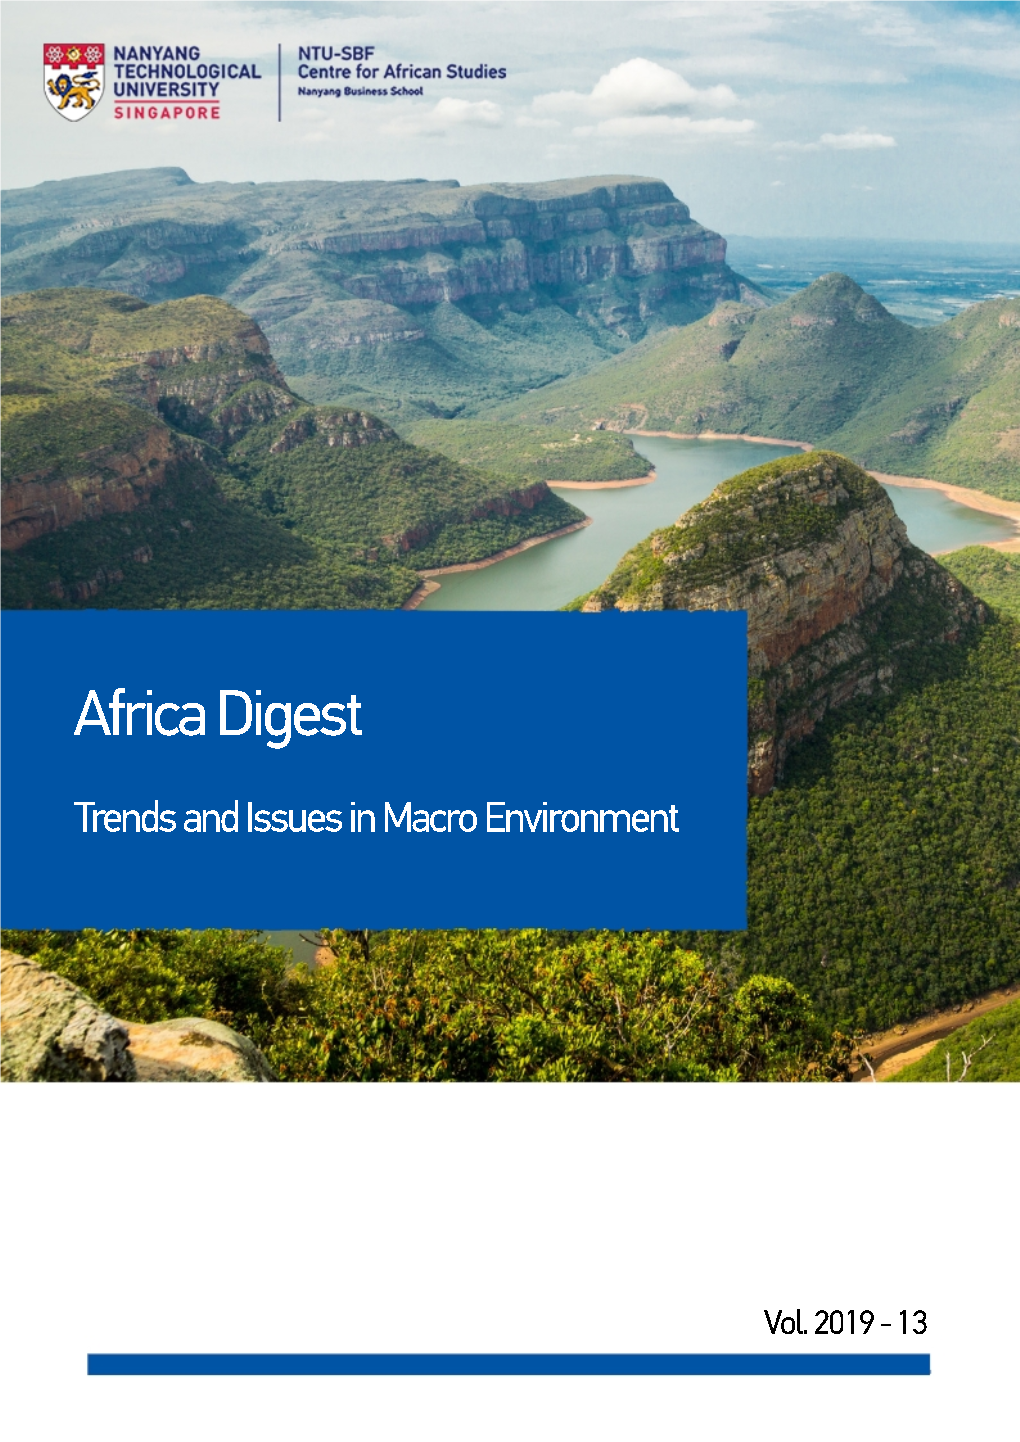 Africa Digest Vol. 2019-13